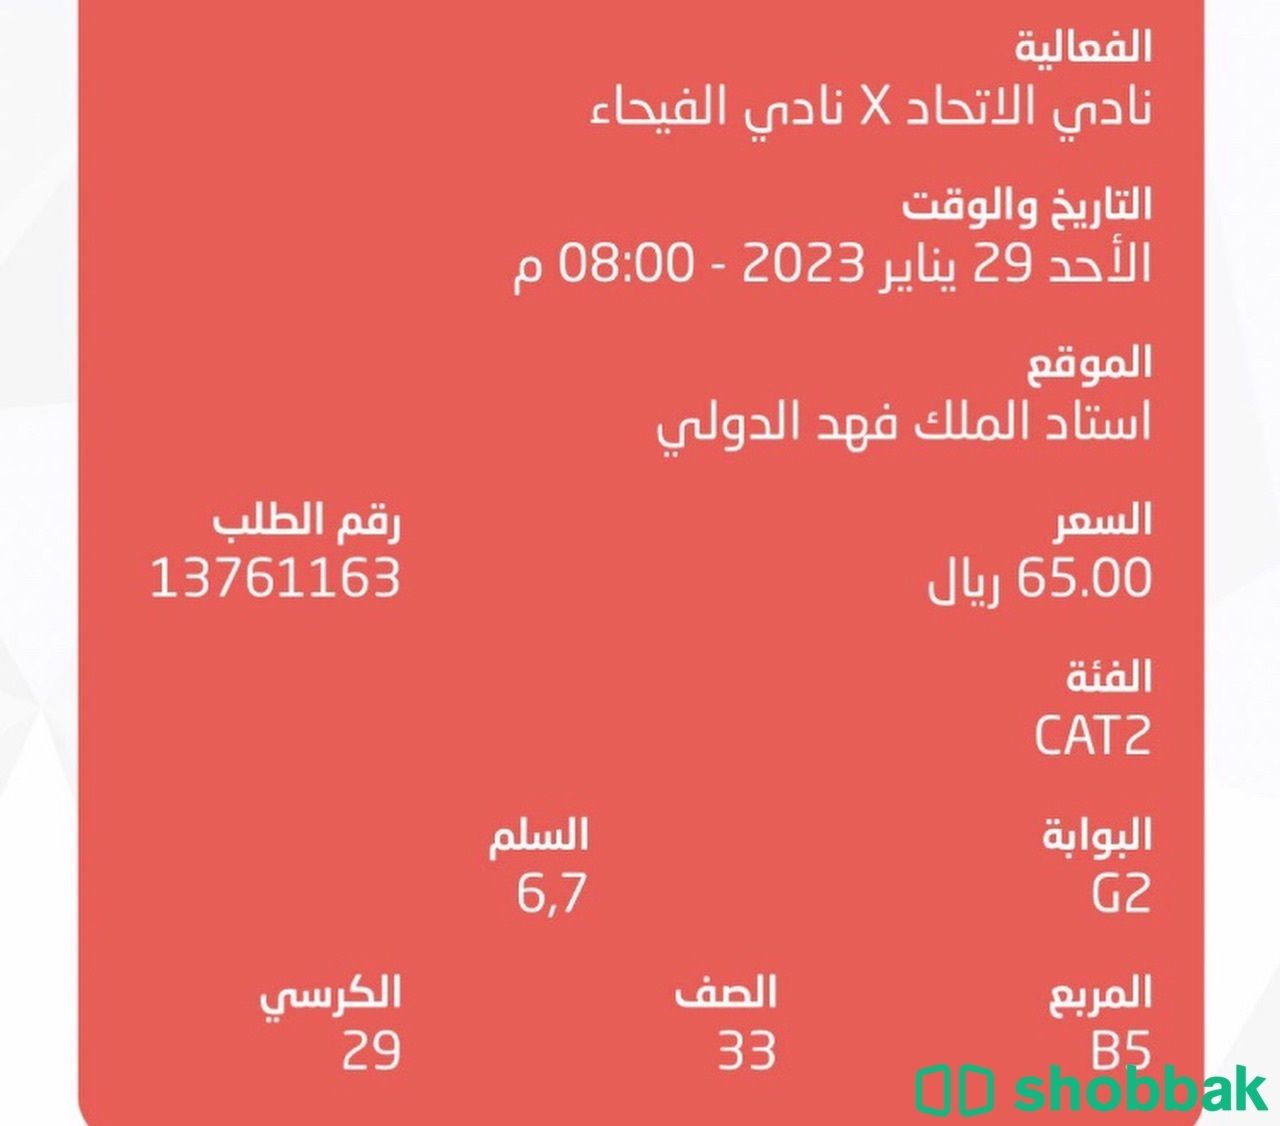 تذكرة مباراة الاتحاد والفيحاء بي نفس سعرها 65 Shobbak Saudi Arabia